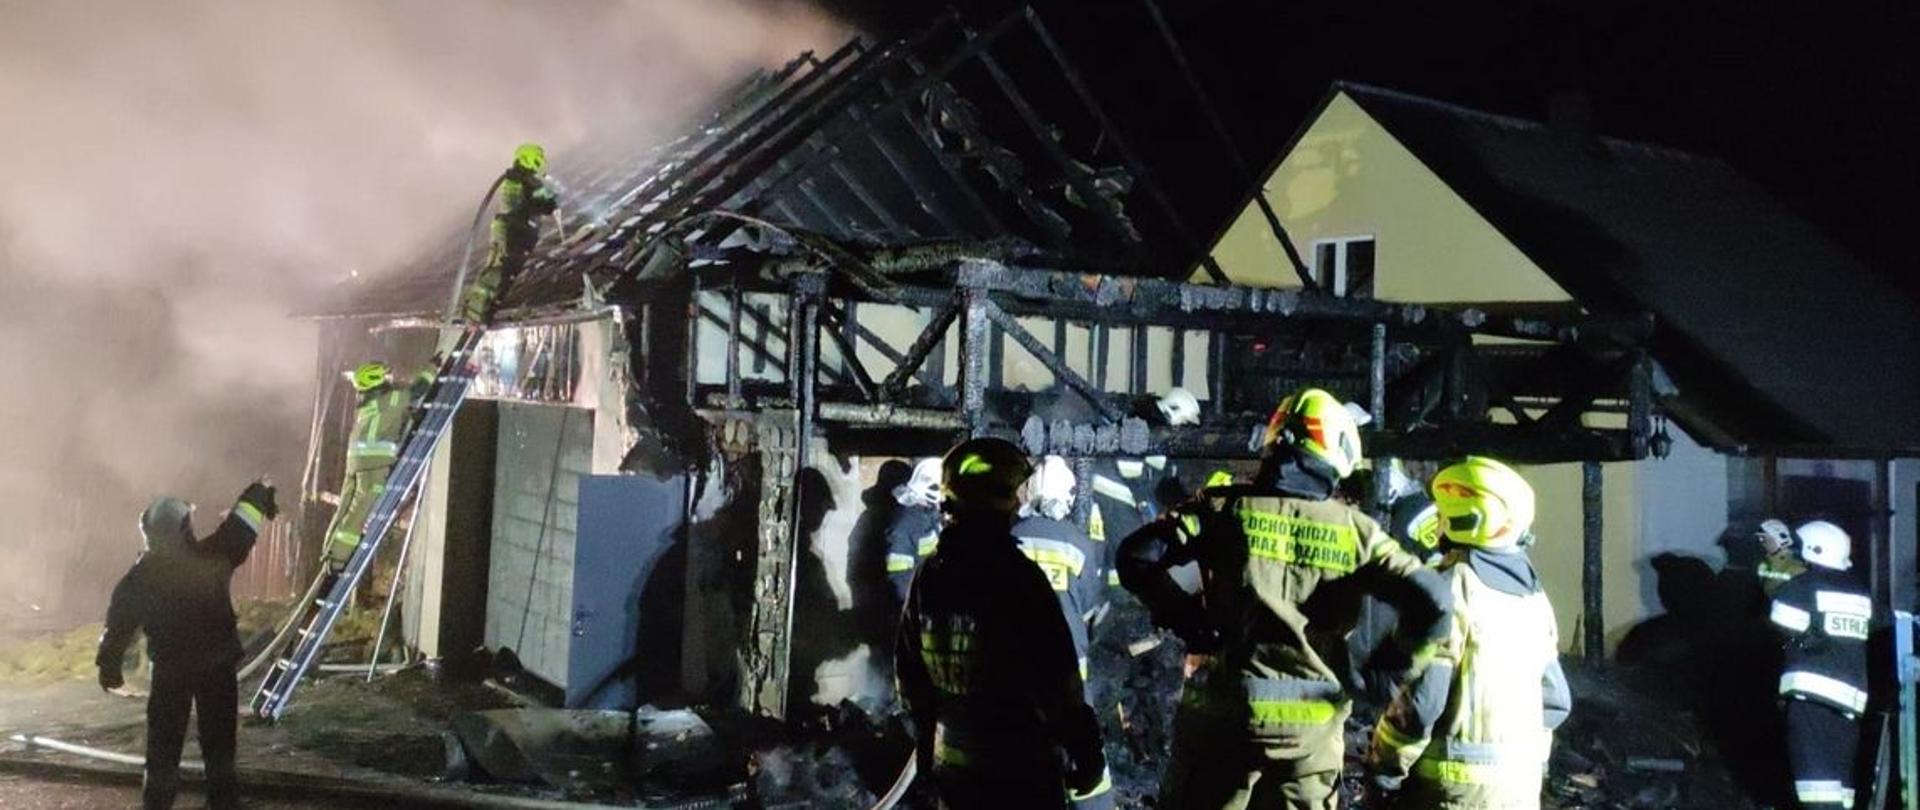 Zdjęcie zrobione podczas pożaru w miejscowości Jabłonka. Na zdjęciu spalany budynek gospodarczy, strażacy prowadzący działania gaśnicze.